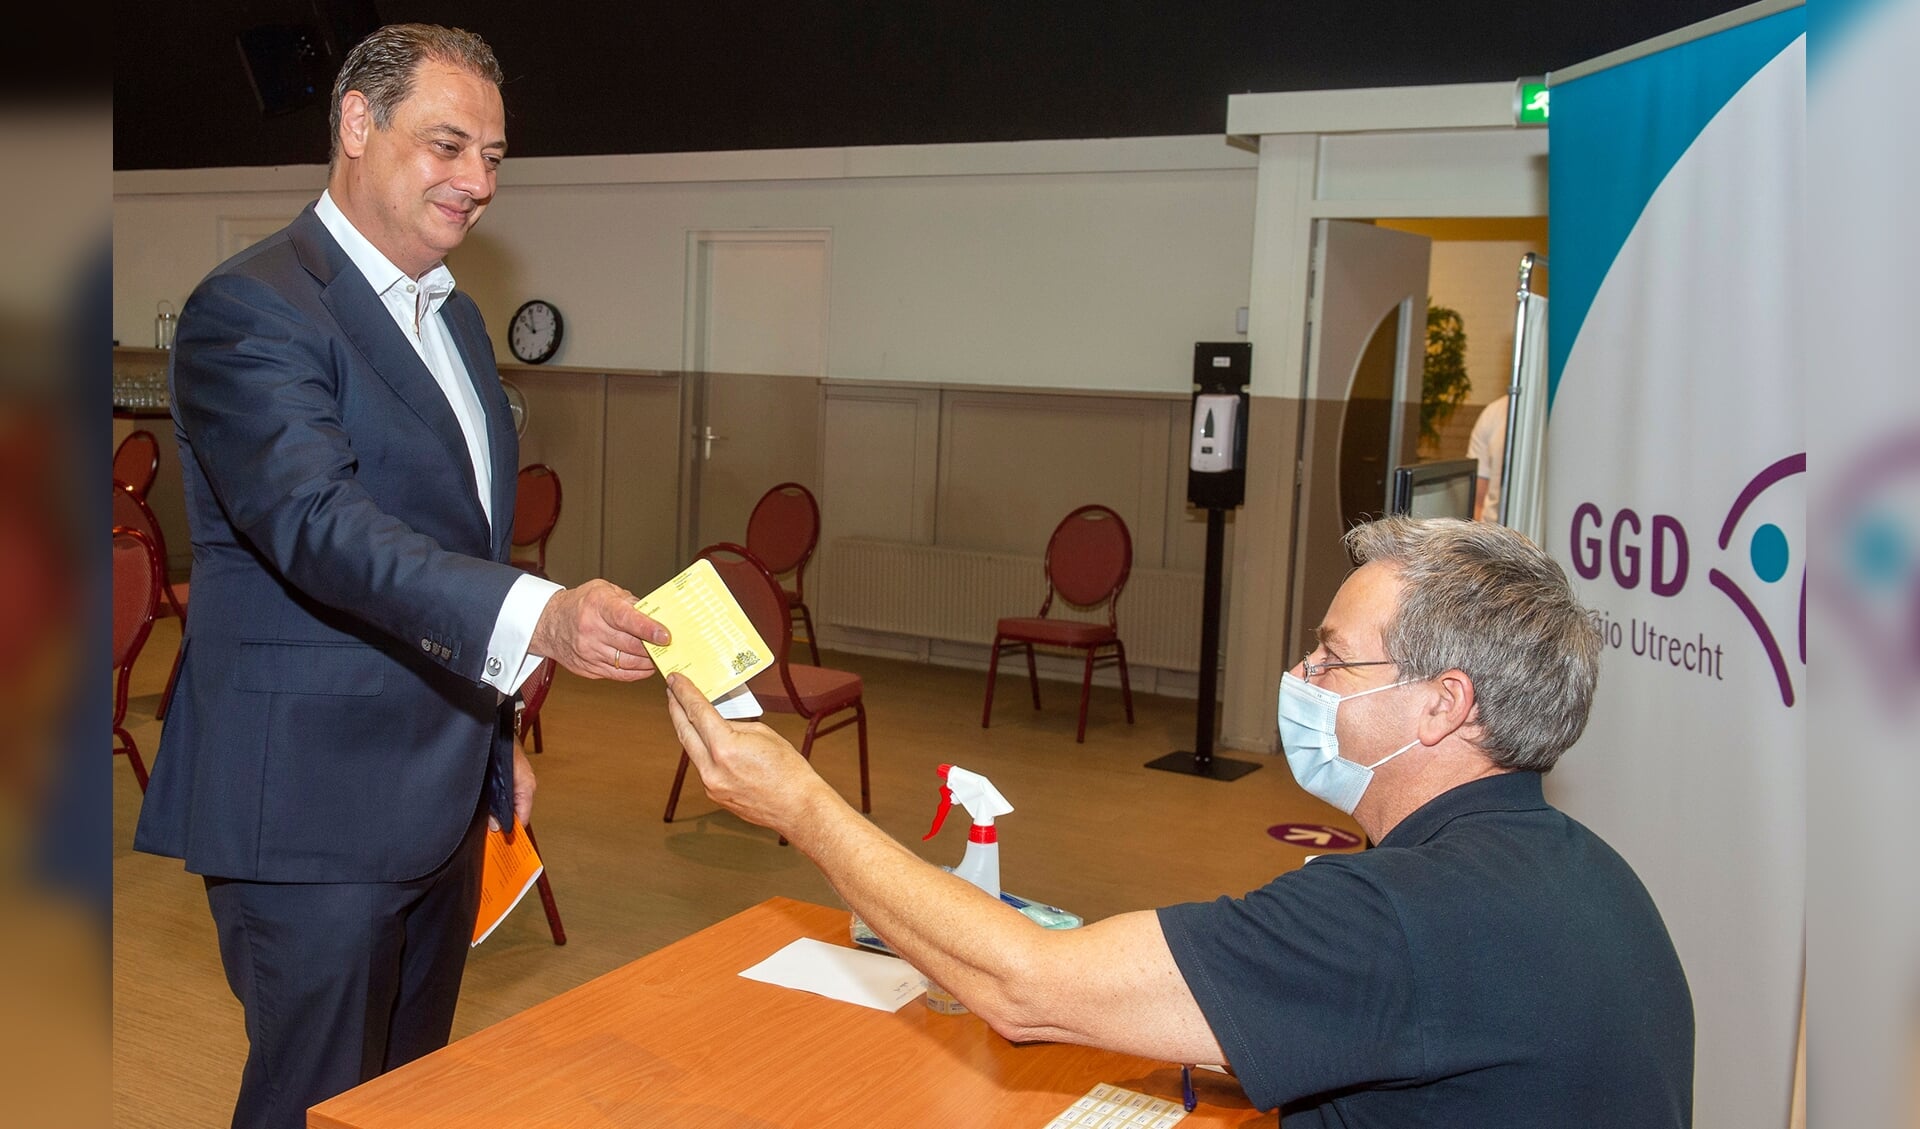 Burgemeester Bouwmeester krijgt het gele vaccinatieboekje terug, waarin nu ook de Covid 19-vaccinaties zijn opgenomen. 